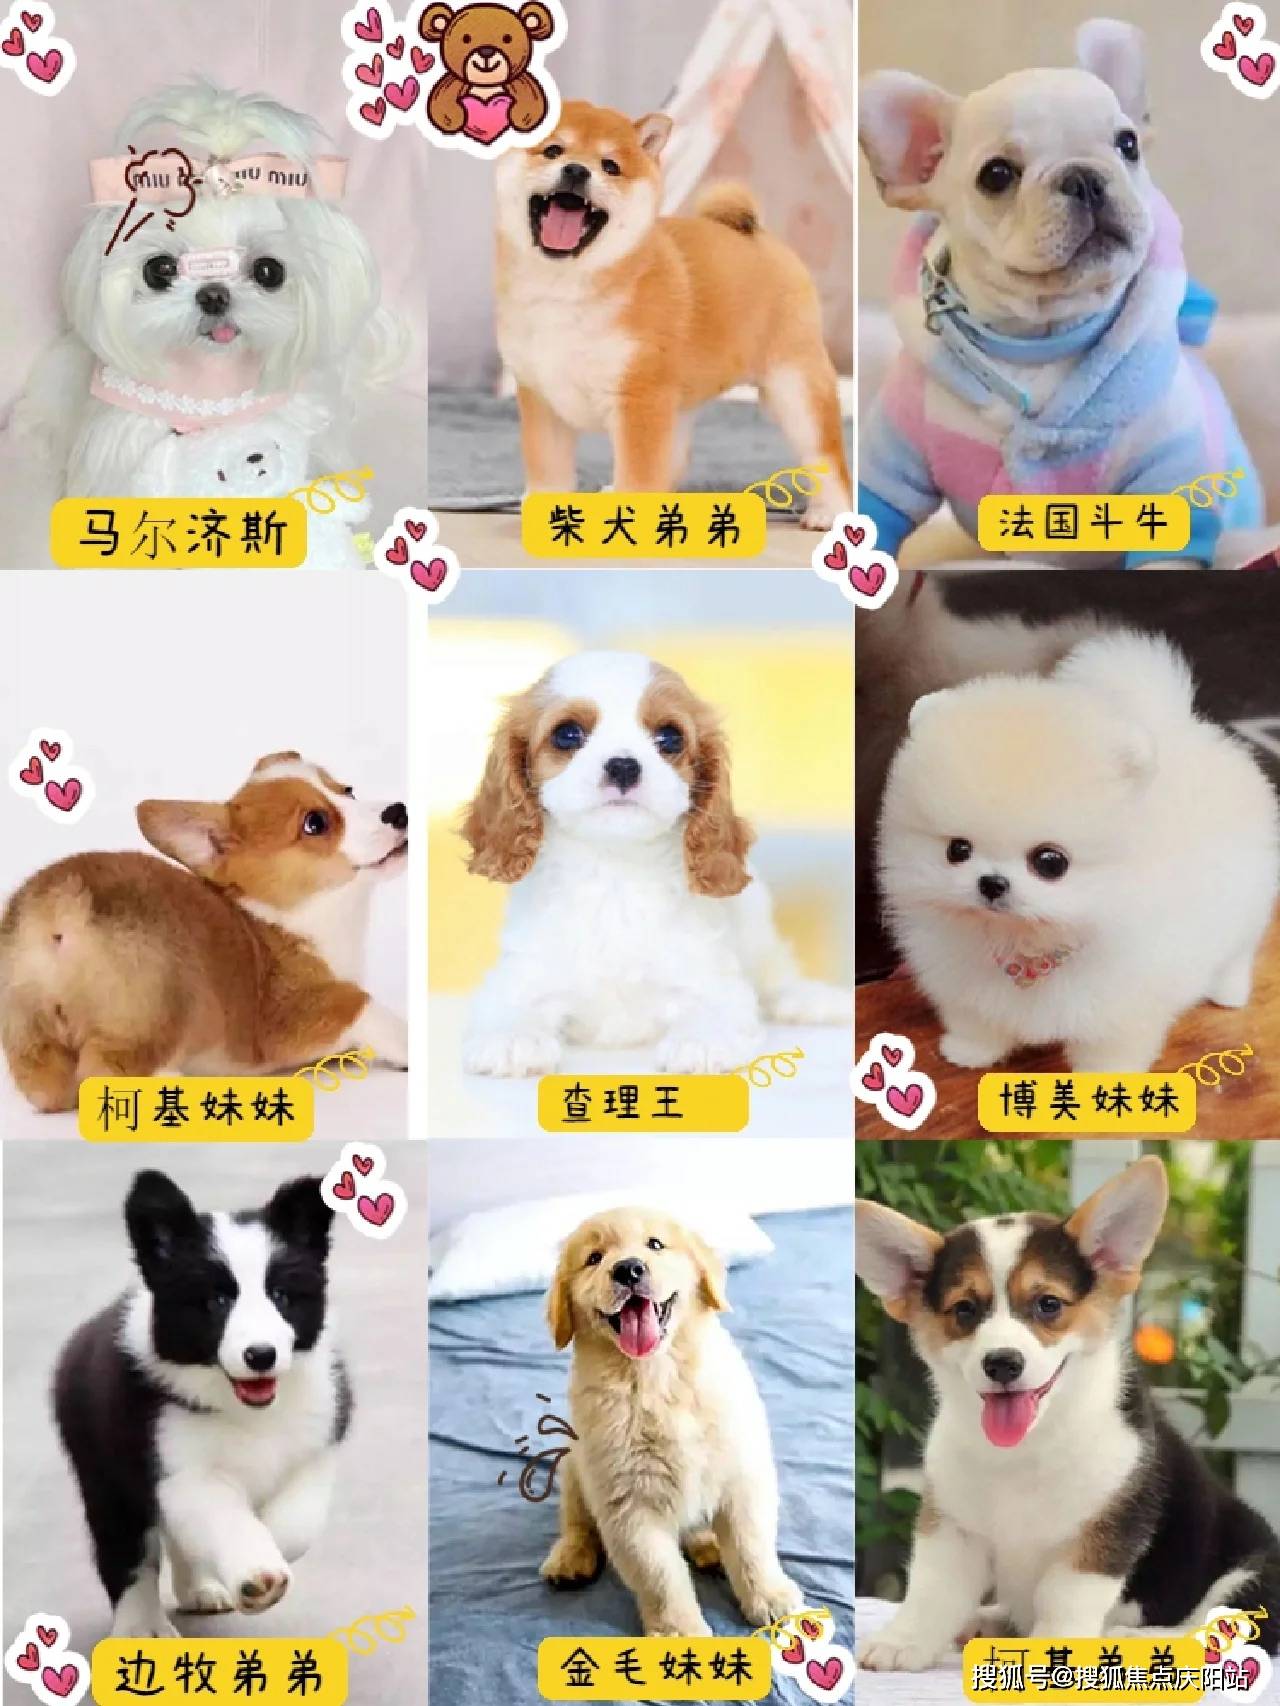 买拉布拉多首页网站(上海闵行区)买拉布拉多幼犬的地方?